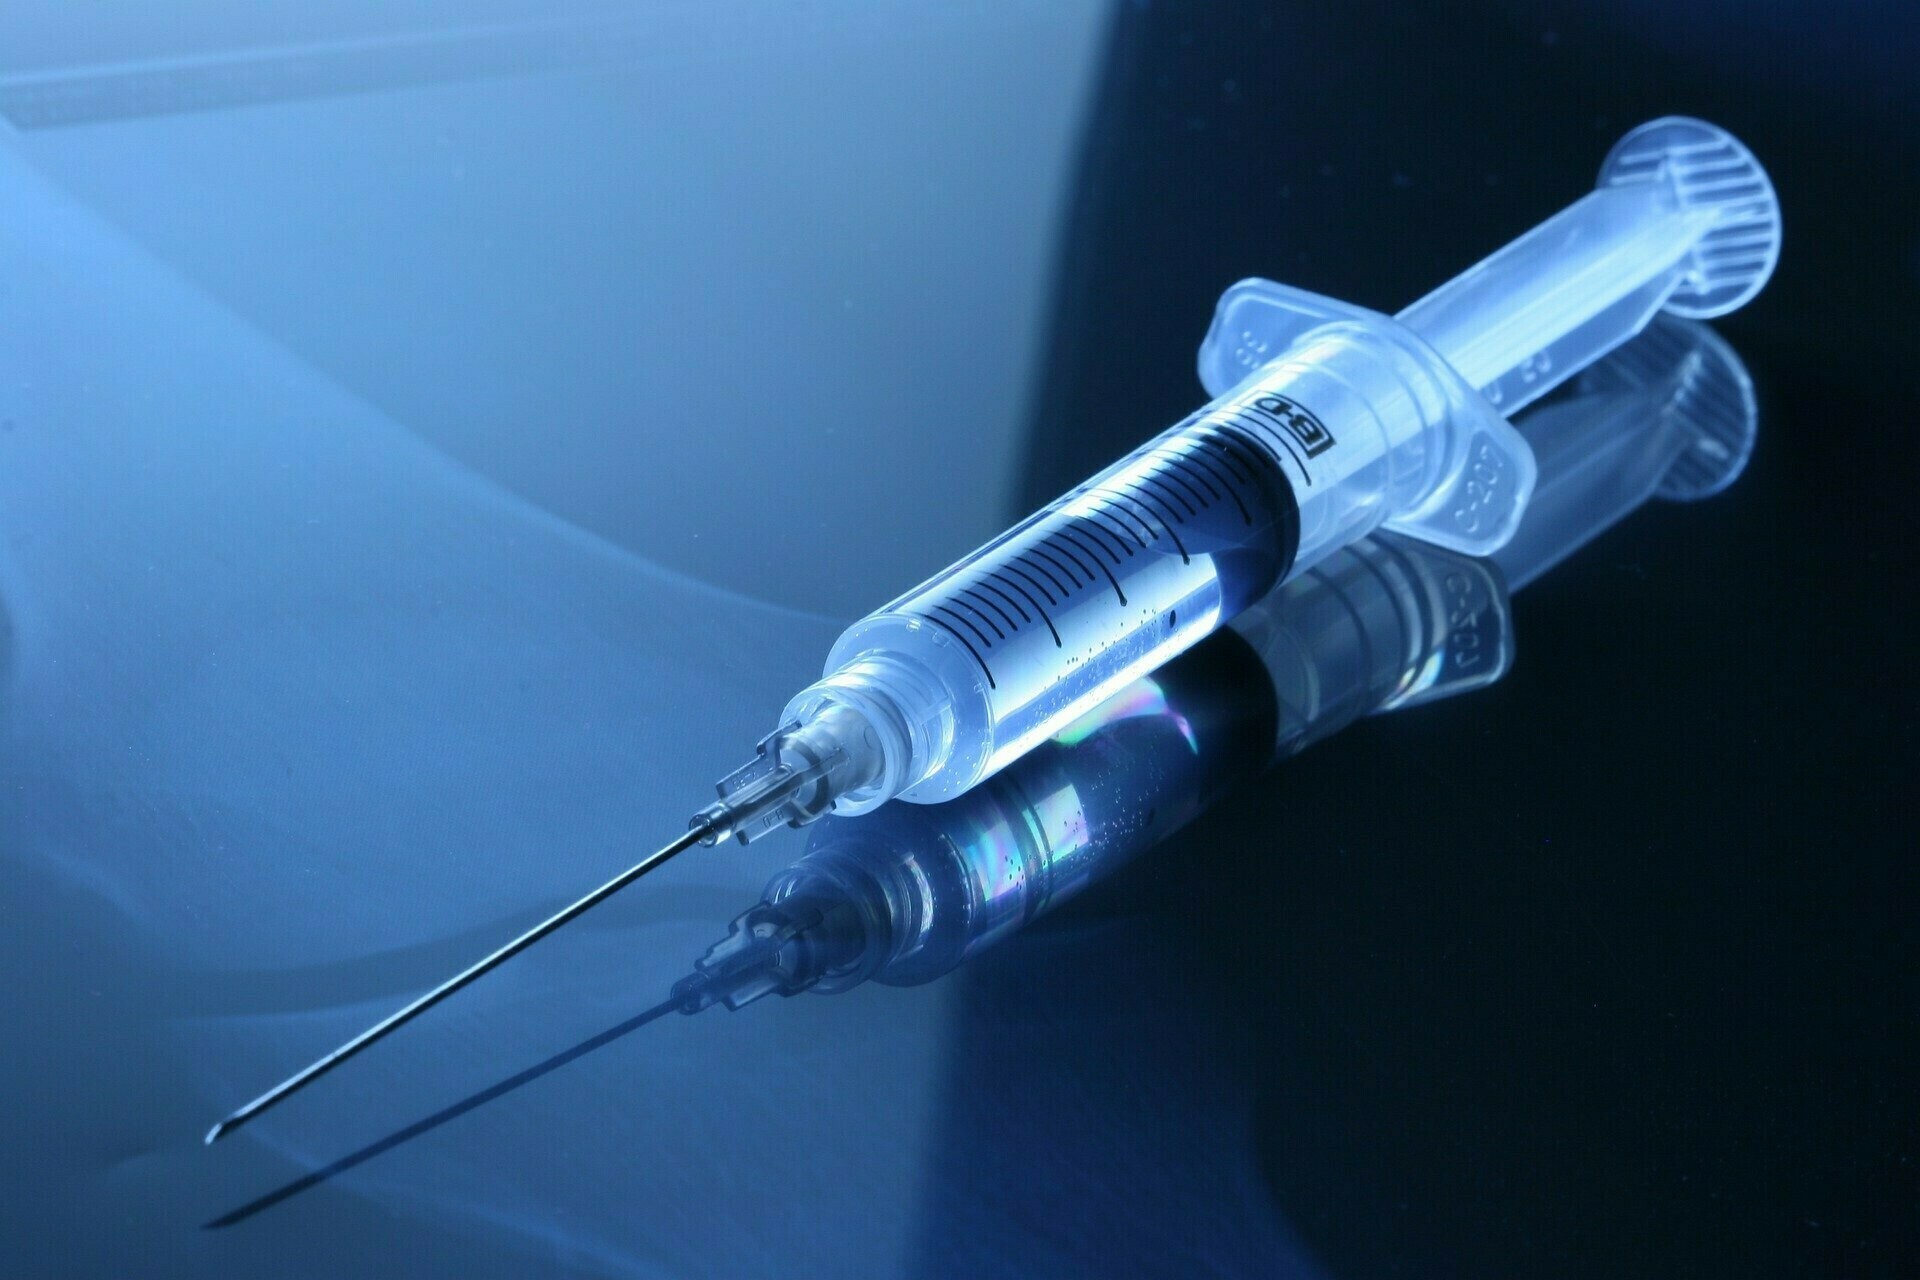 Δωρεάν από 1η Νοεμβρίου η χορήγηση των αντιγριπικών εμβολίων